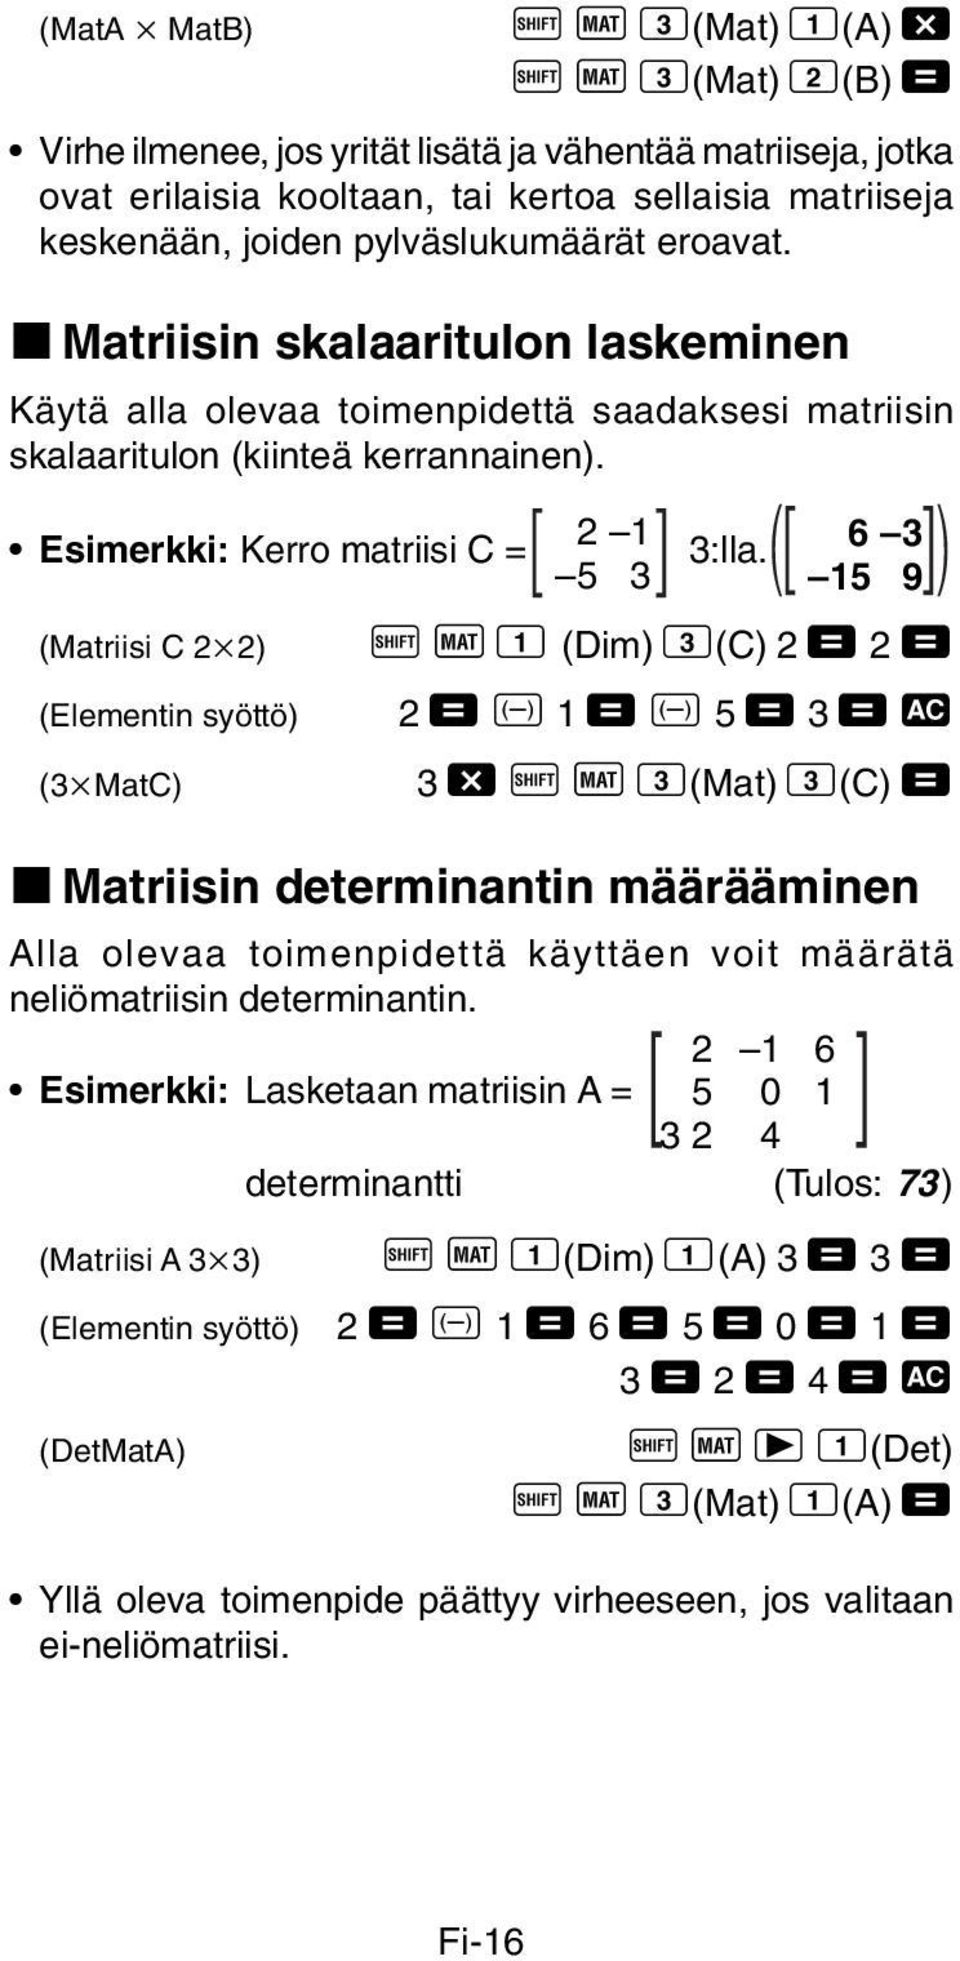 (Matriisi C 2 2) A j 1 (Dim) 3(C) 2 = 2 = (Elementin syöttö) 2 = D 1 = D 5 = 3 = t (3 MatC) 3 - A j 3(Mat) 3(C) = k Matriisin determinantin määrääminen Alla olevaa toimenpidettä käyttäen voit määrätä